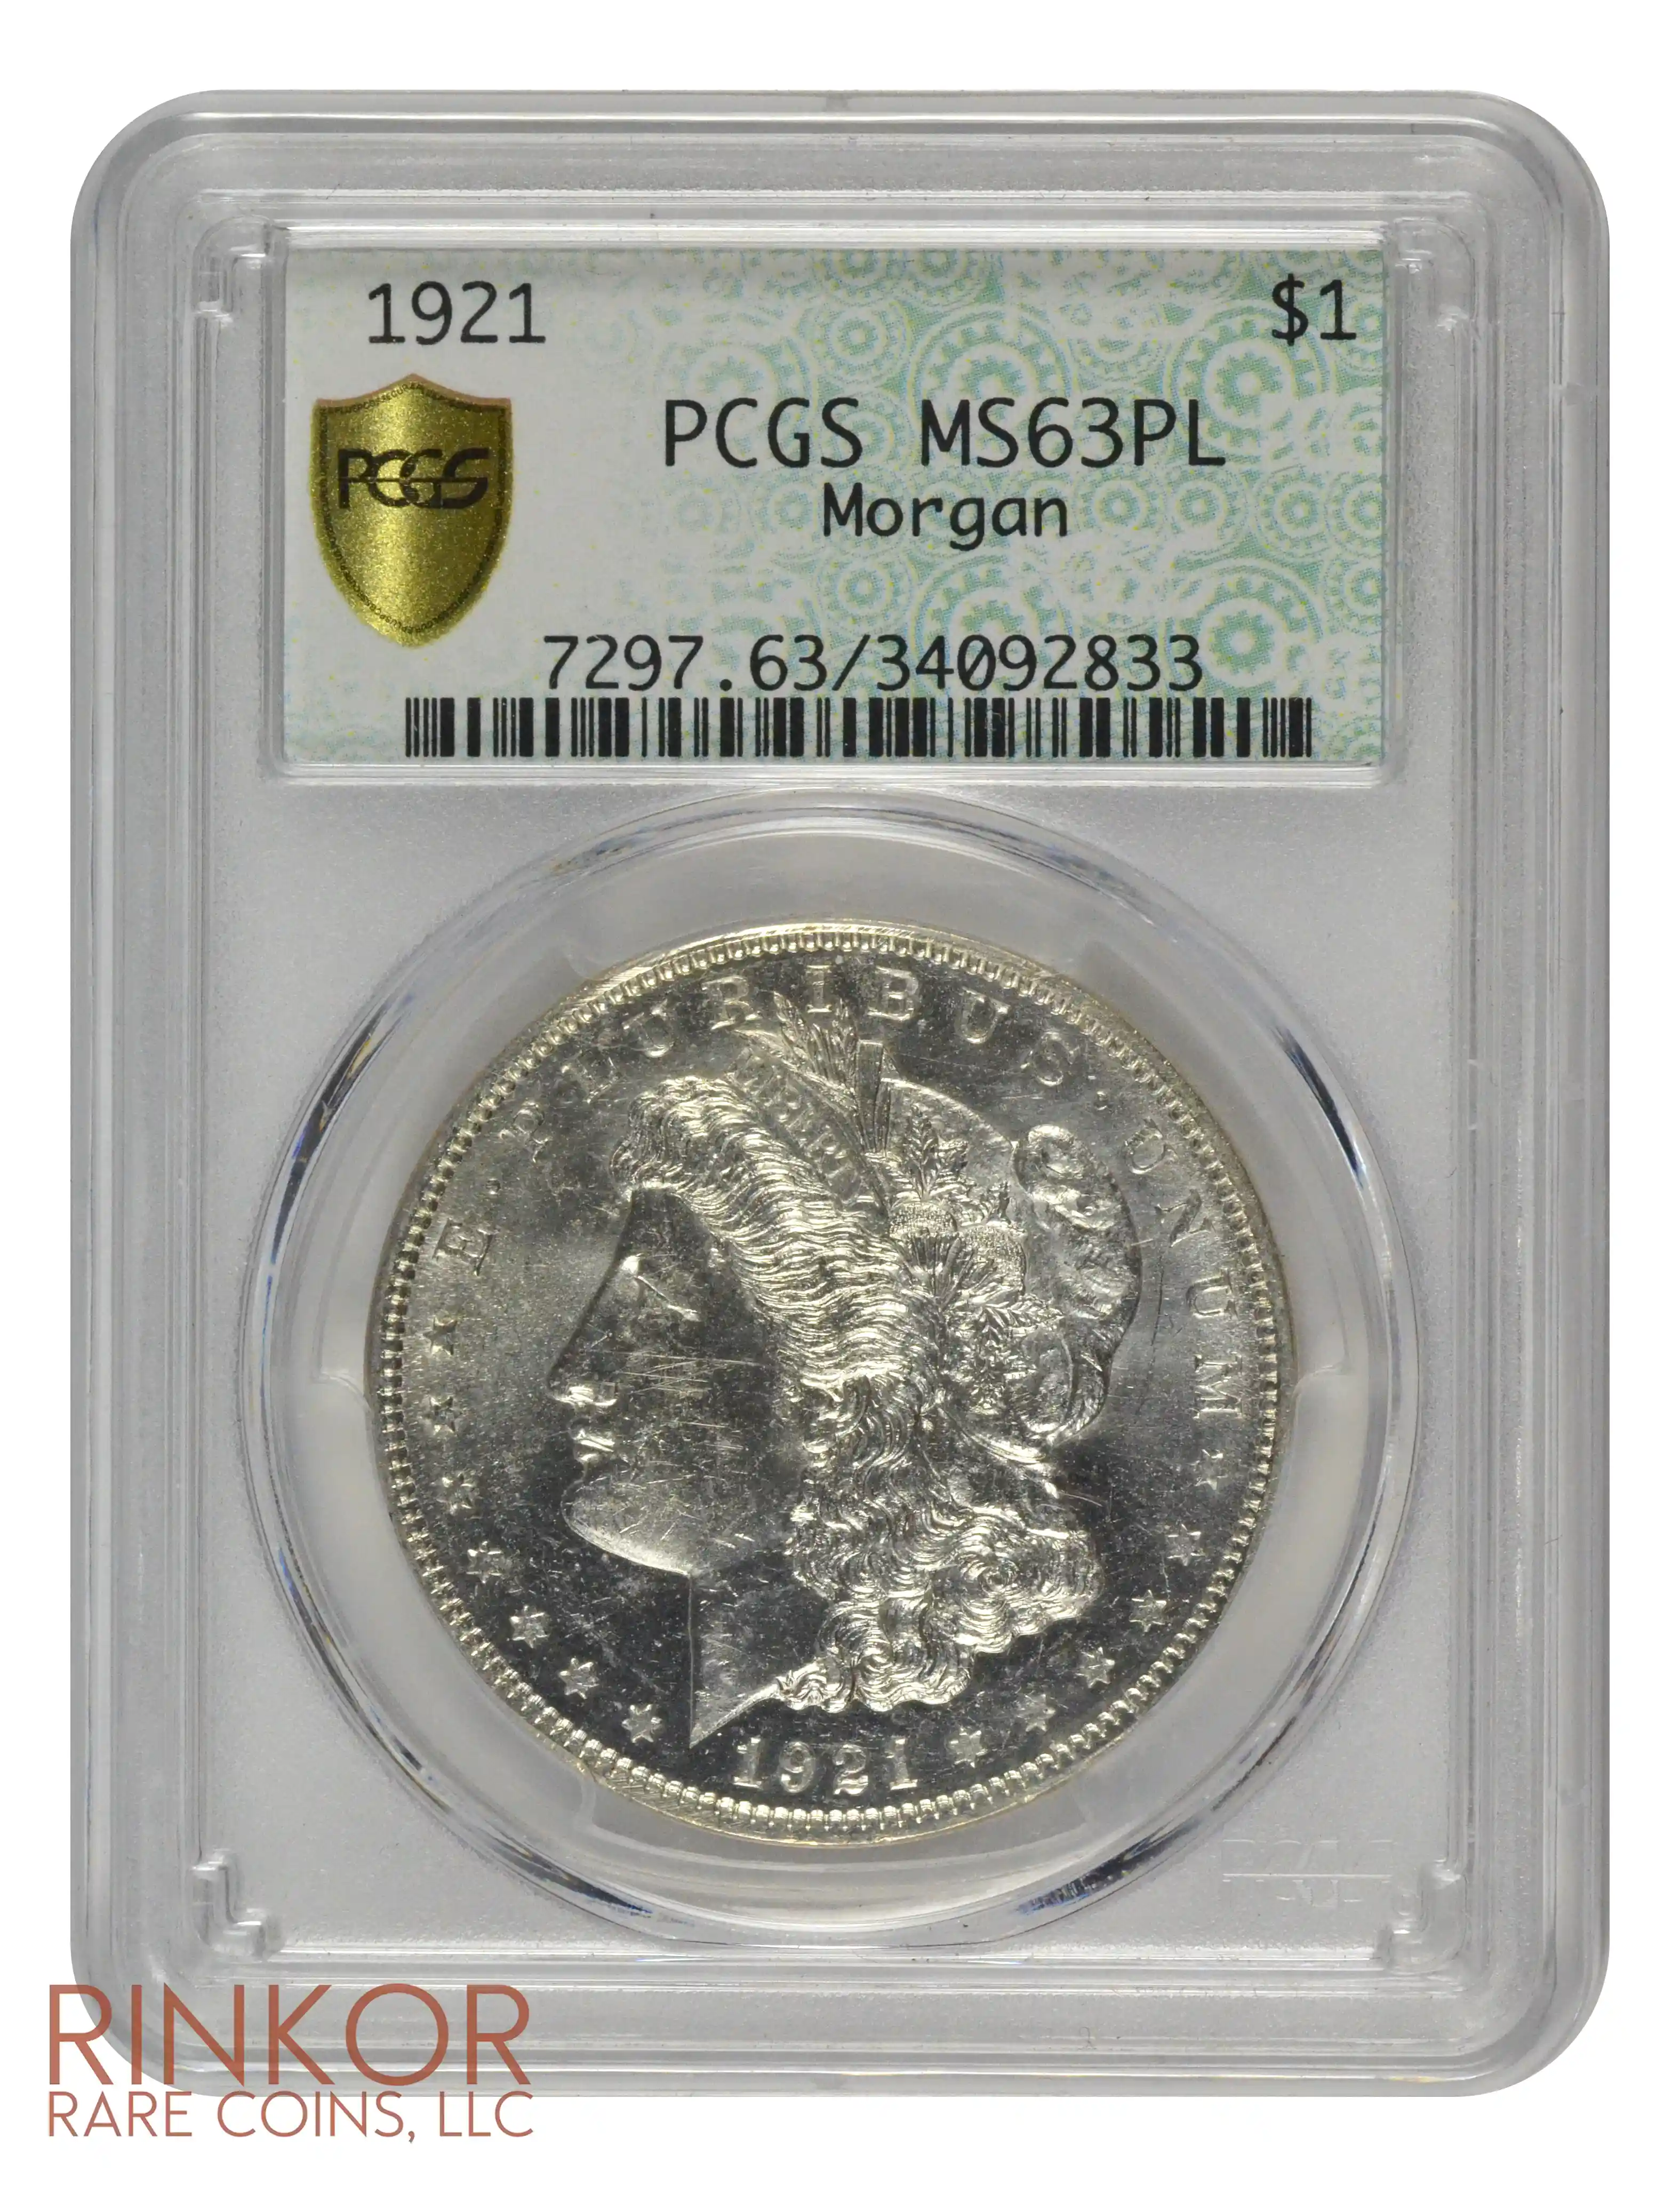 1921 $1 PCGS MS 63 PL